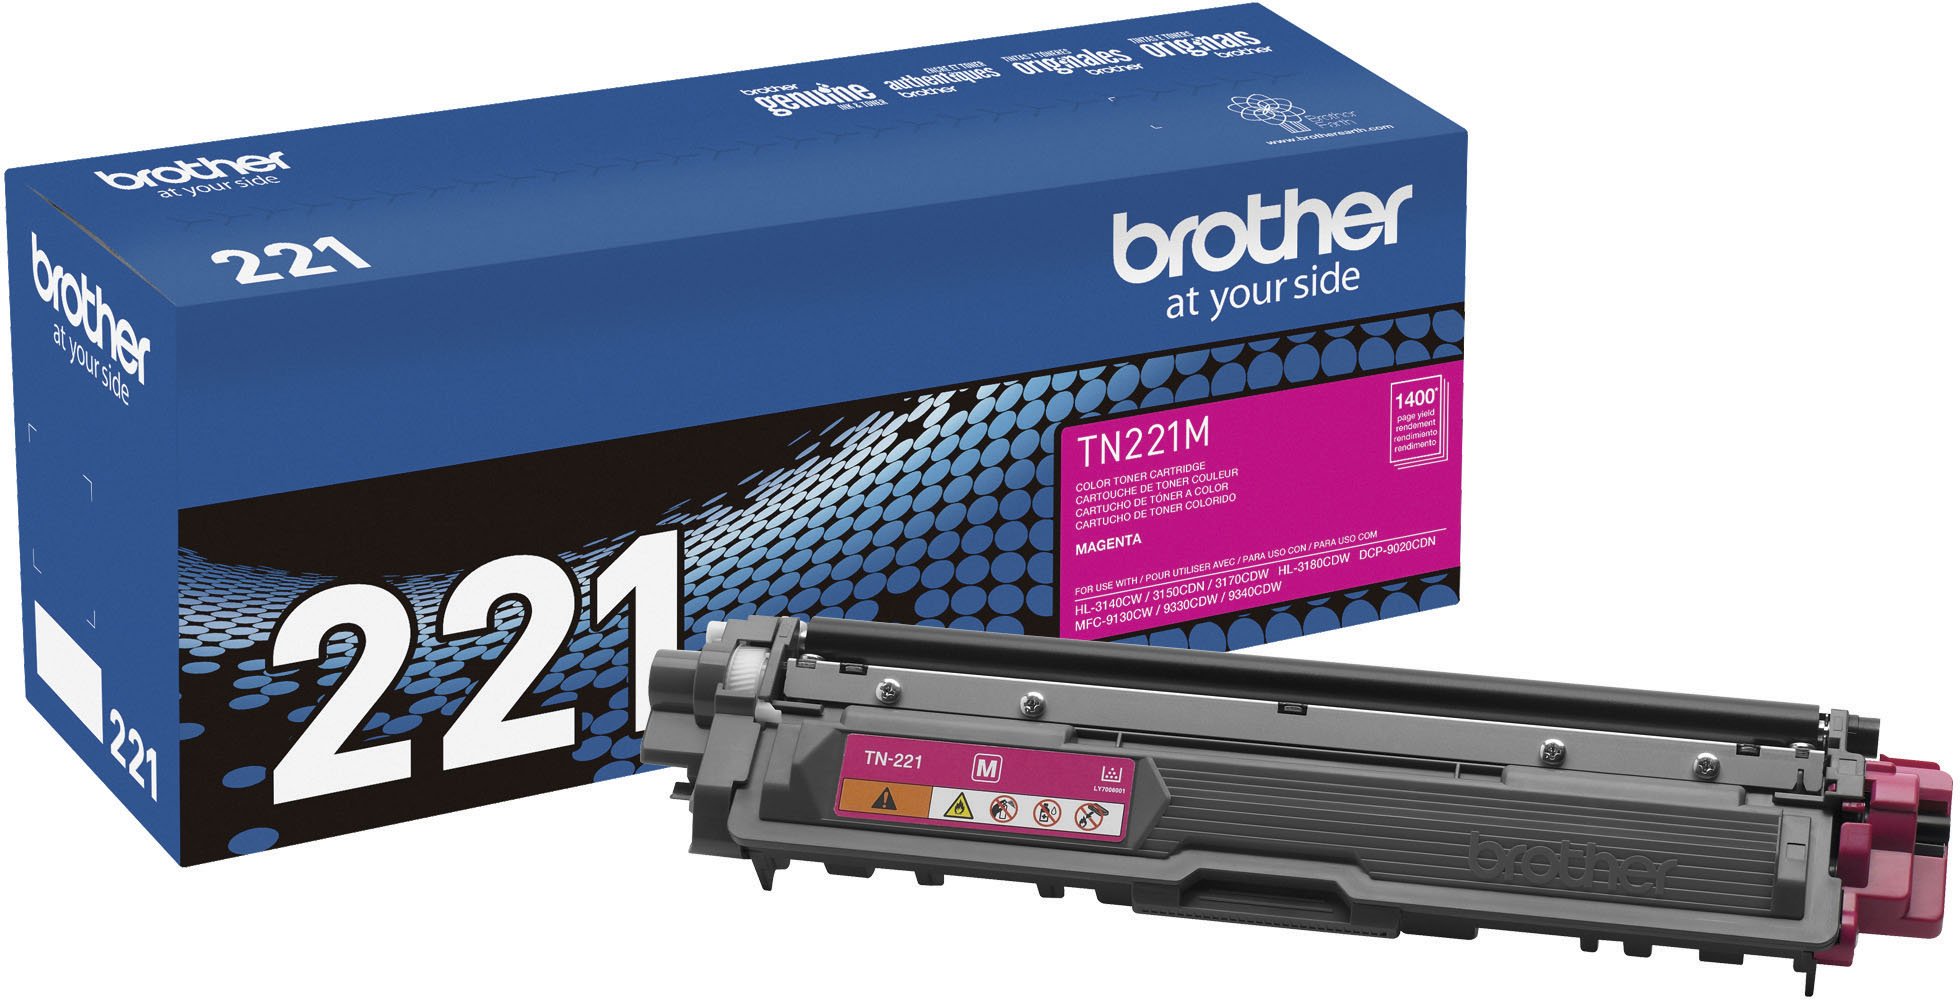 twee weken Alstublieft seks Brother TN221M Standard-Yield Toner Cartridge Magenta TN-221M - Best Buy